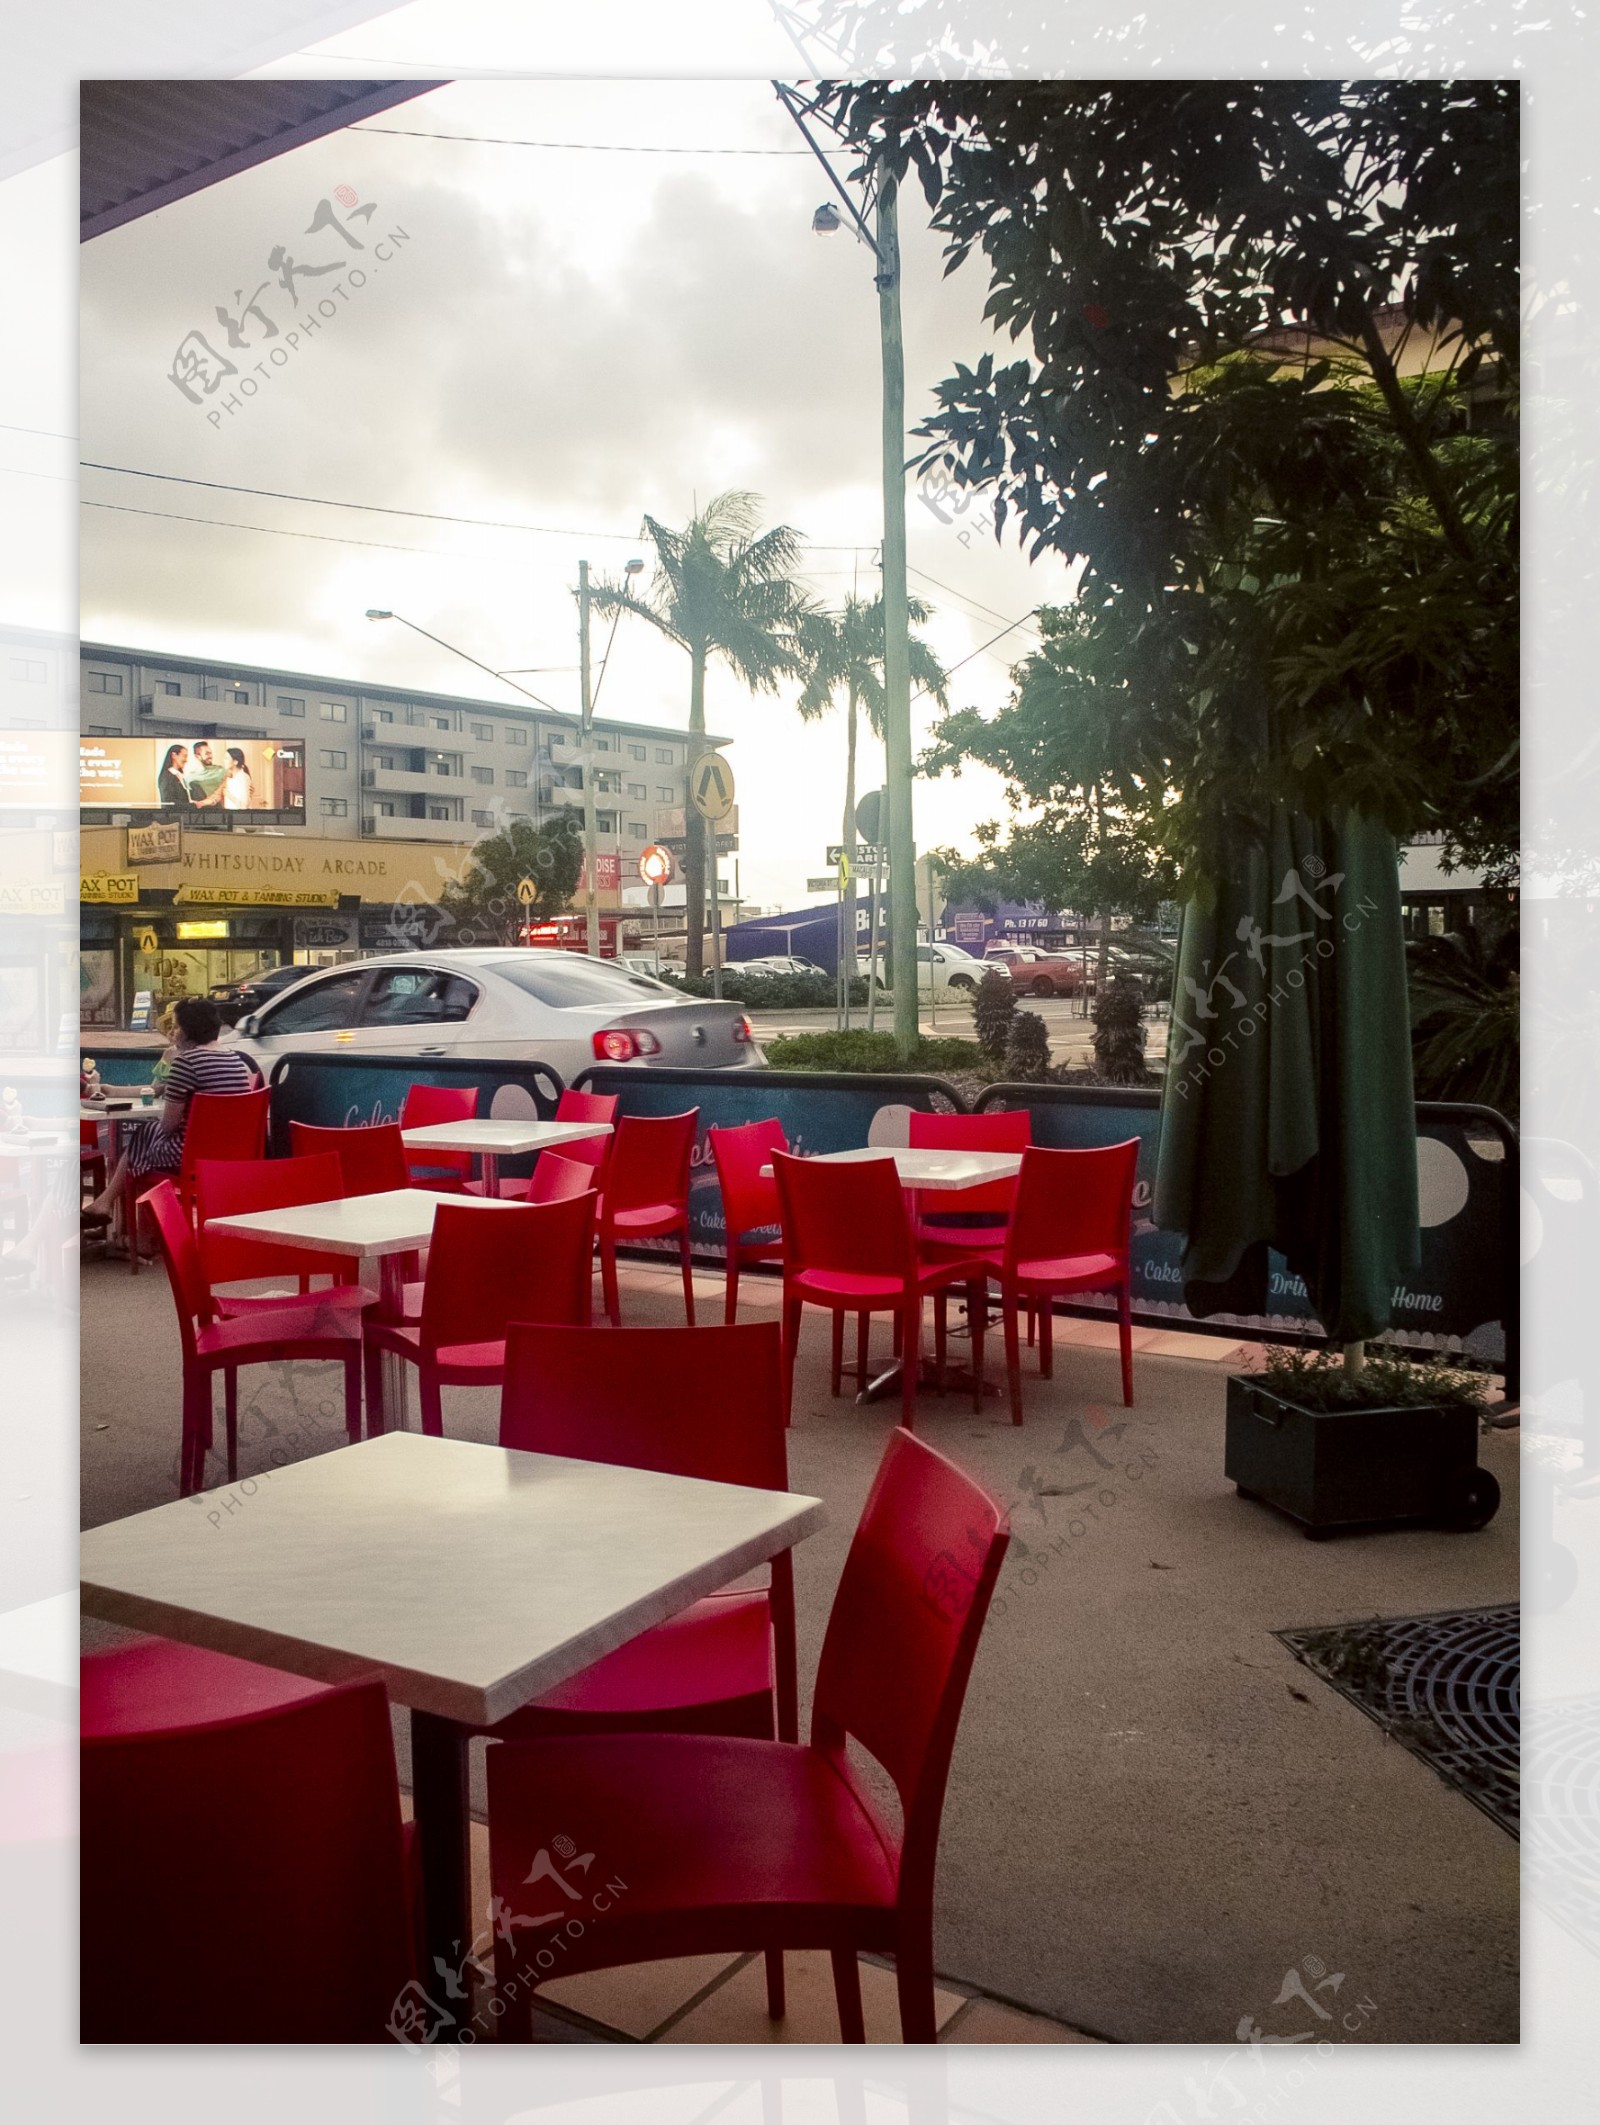 澳洲餐厅露天红色桌椅